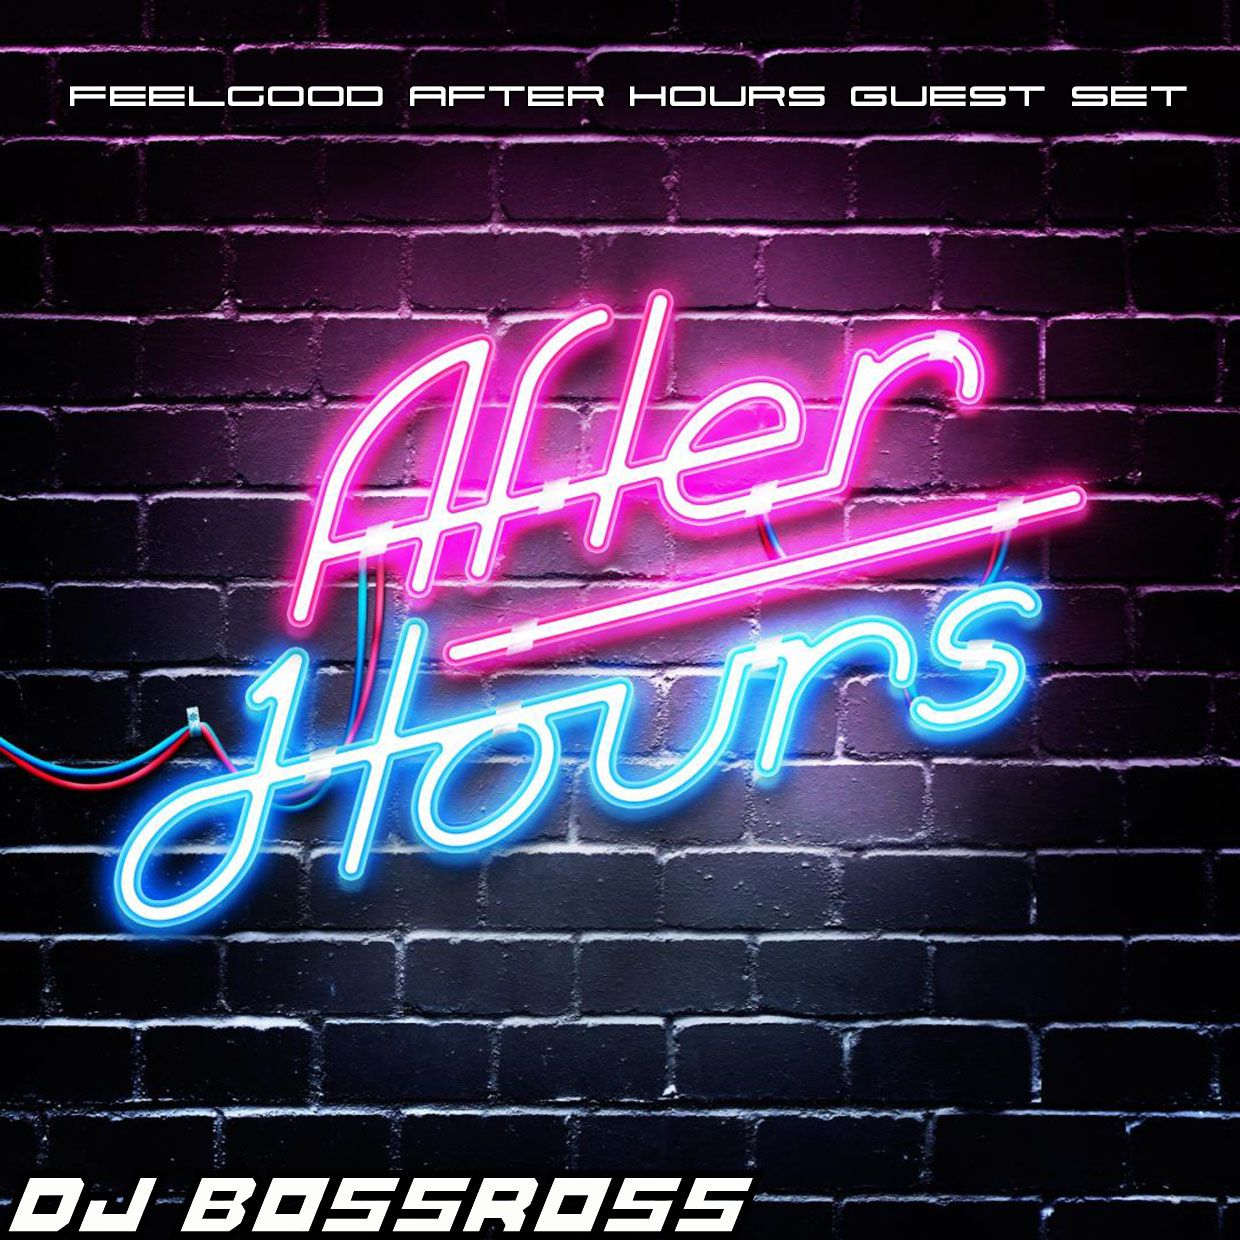 Feel Good Afterhours Guest Mix by DJ BossRoss